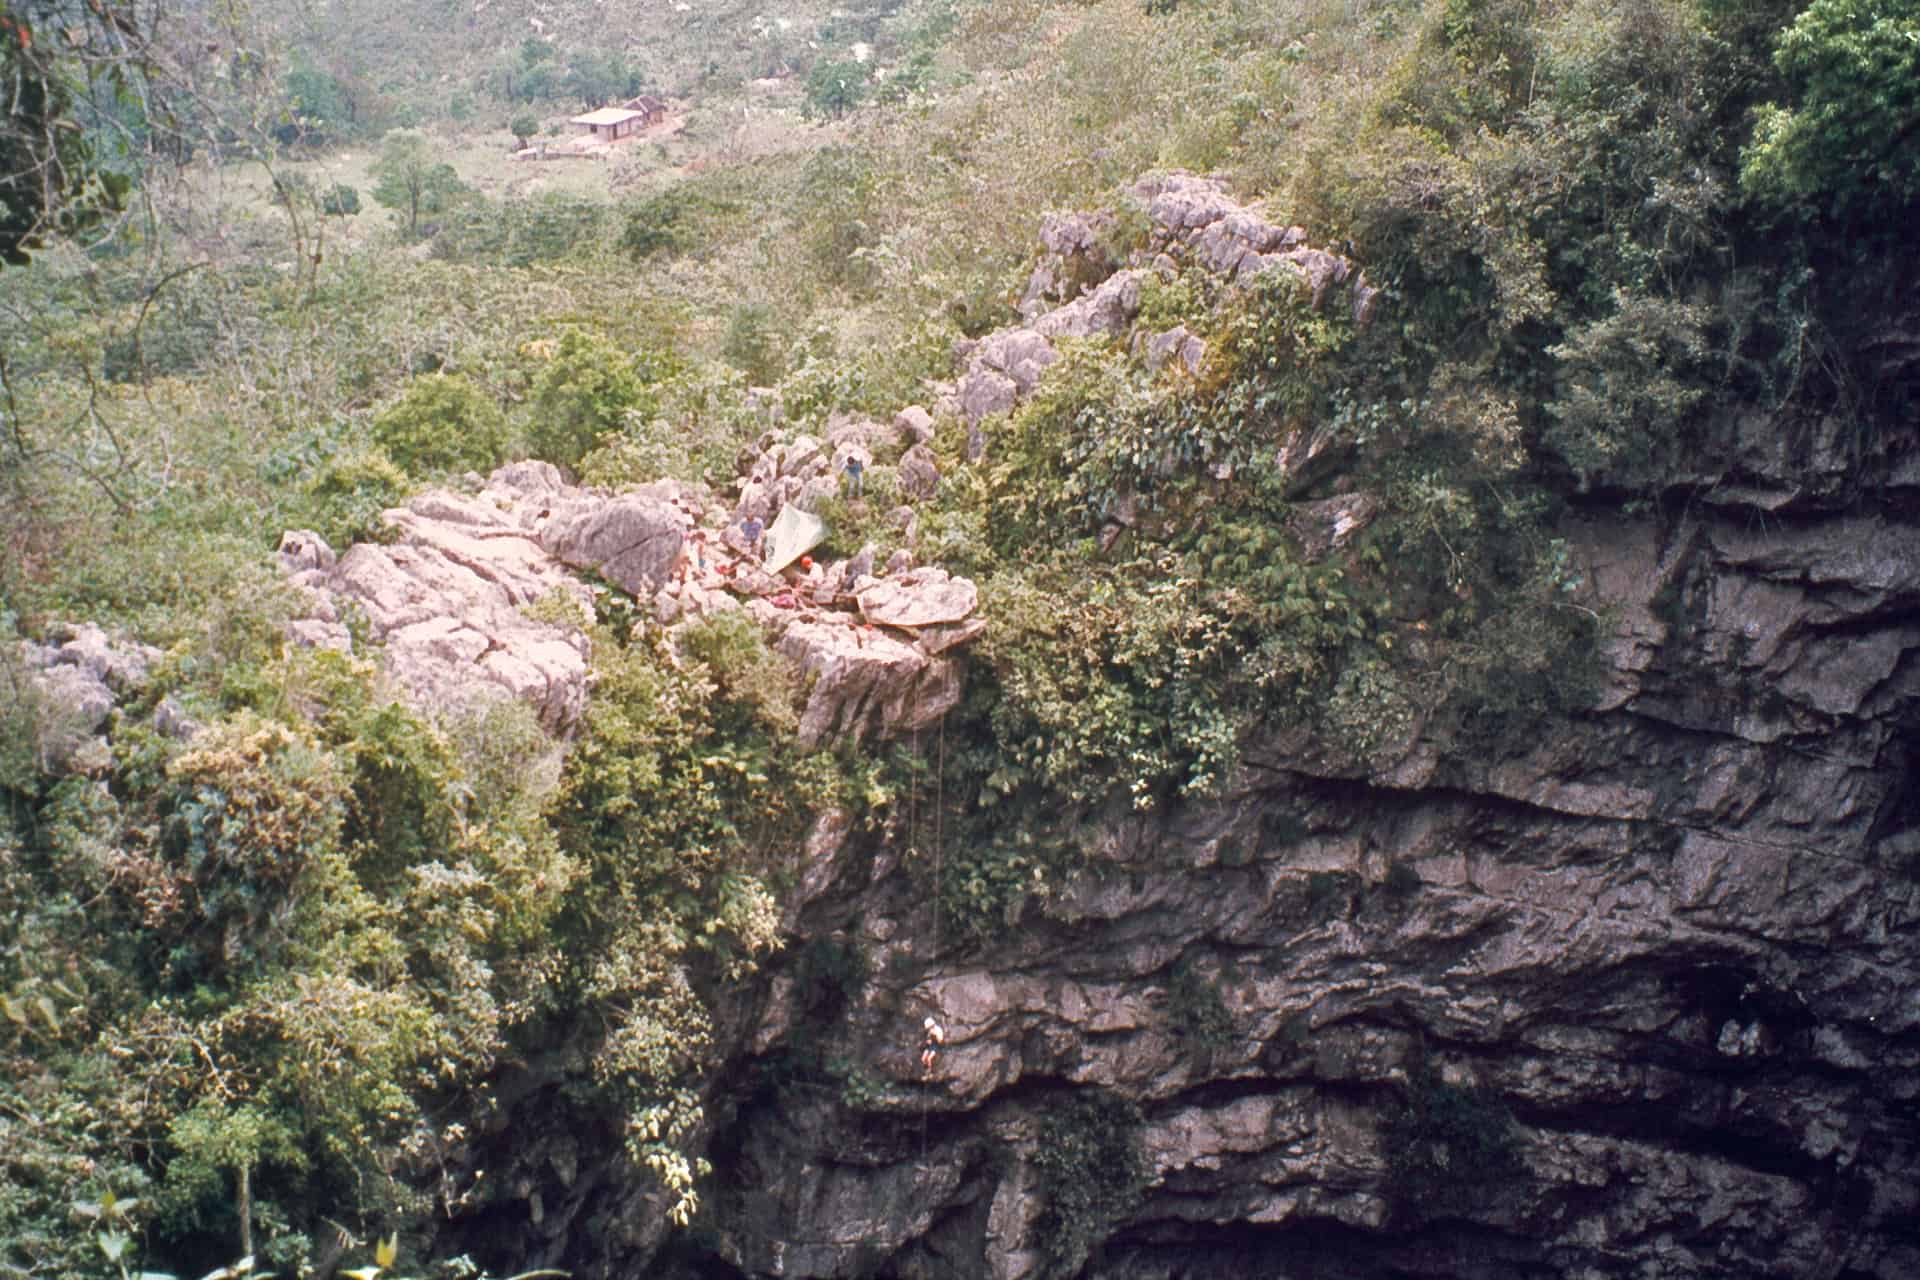 Sotano de las golondrinas - cave of the swallows mexico